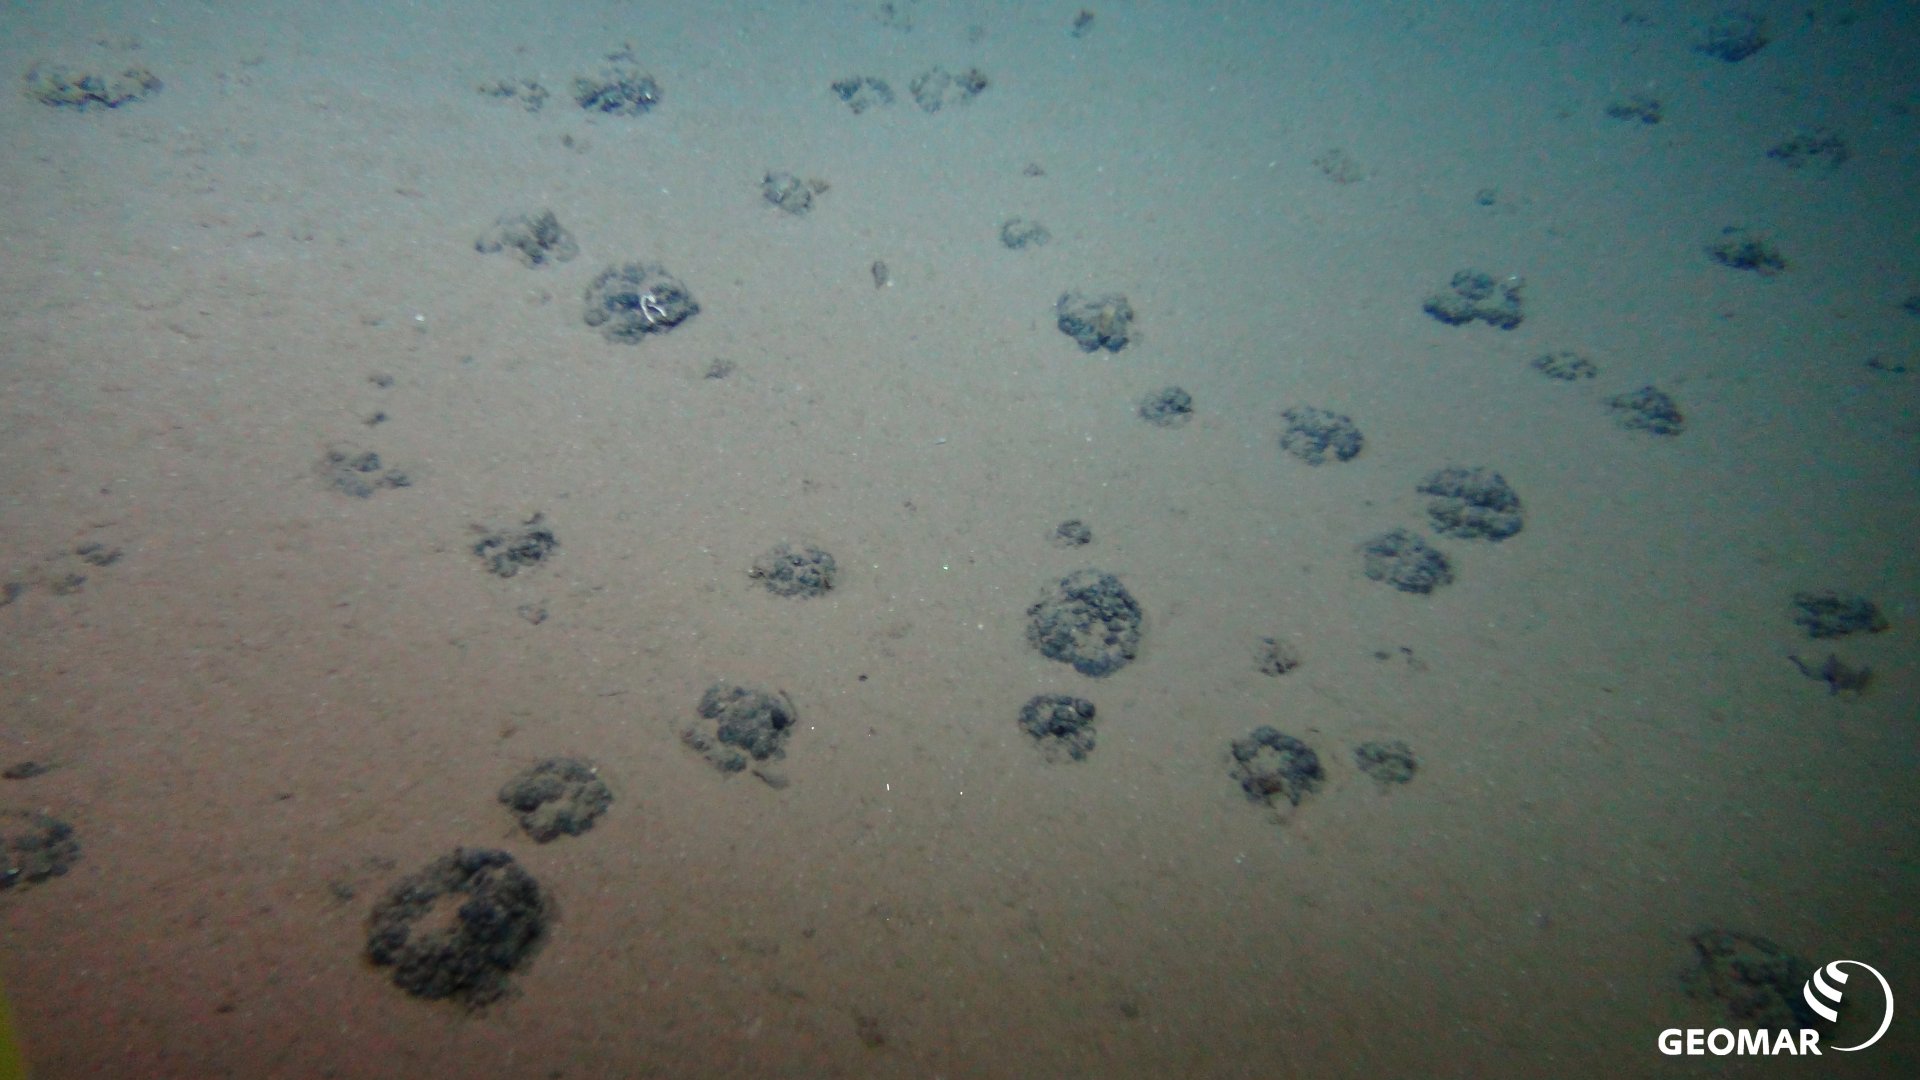 Ungestörter Meeresboden mit der für das DISCOL-Gebiet typischen, geringen Manganknollendichte (Quelle: ROV-Team/GEOMAR)